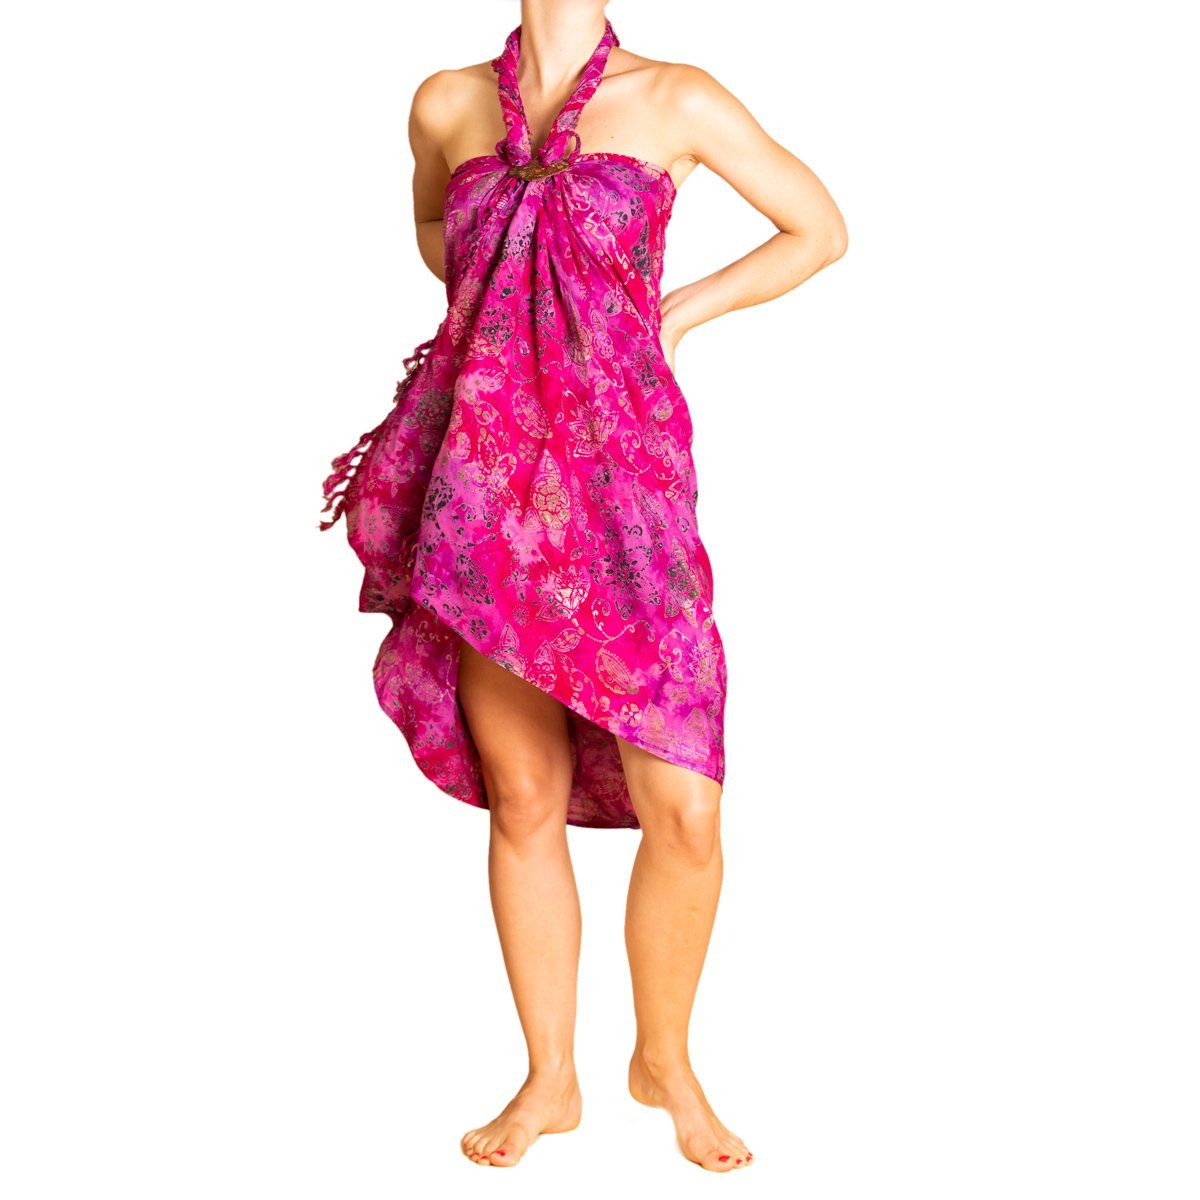 auch Bikini als Sarong Pareo PANASIAM oder, für Tuch Strandtuch Strand Cover-up in Wachsbatik Strandkleid Größen dream tragbar den pinkish B016 großen Überwurf Wrap